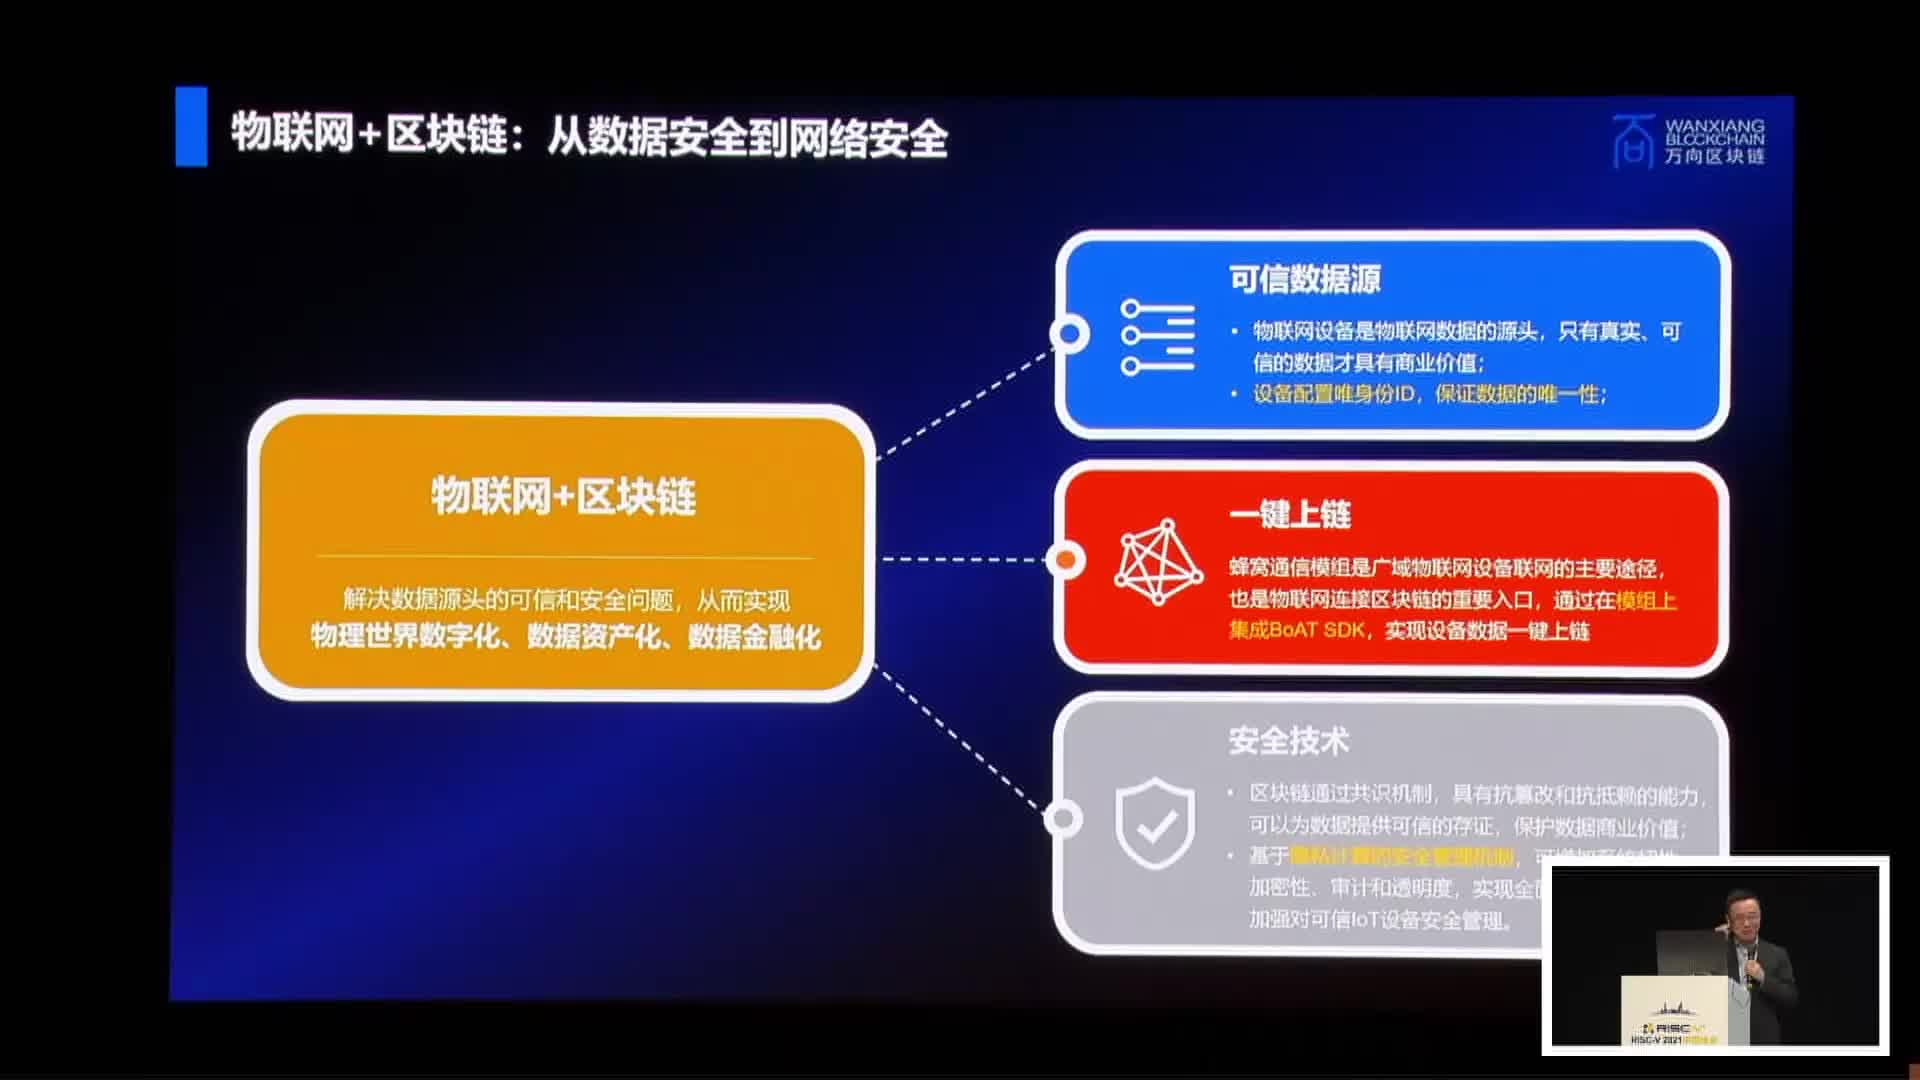 开源架构协同赋能：区块链+RISC-V - 王允臻@万向 - 第一届 RISC-V 中国峰会2.